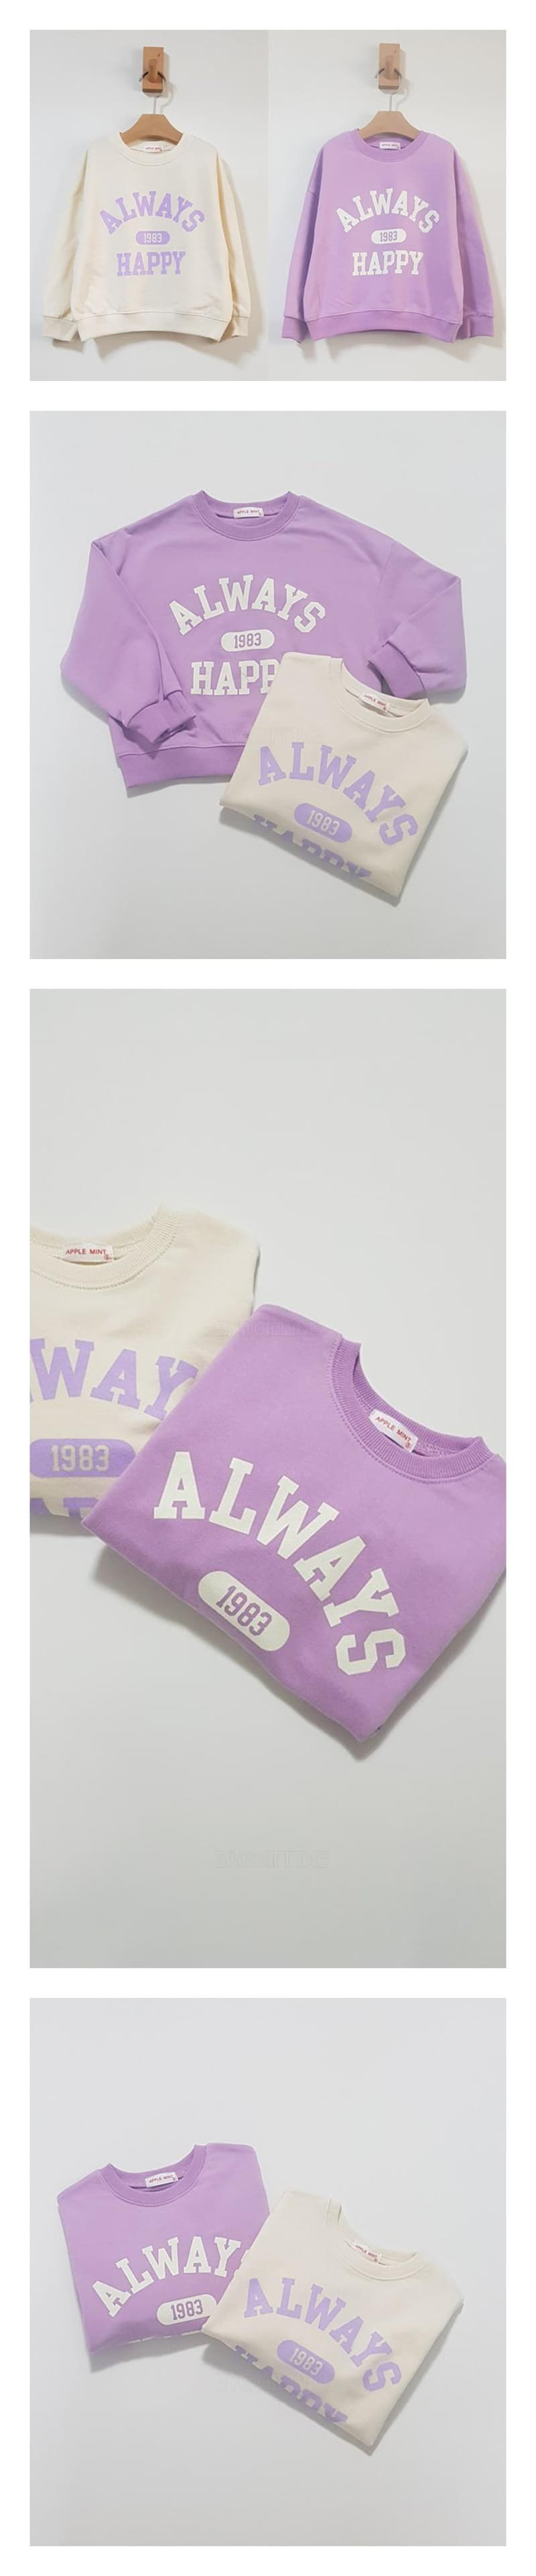 Applemint - Korean Children Fashion - #minifashionista - Allways Sweatshirt